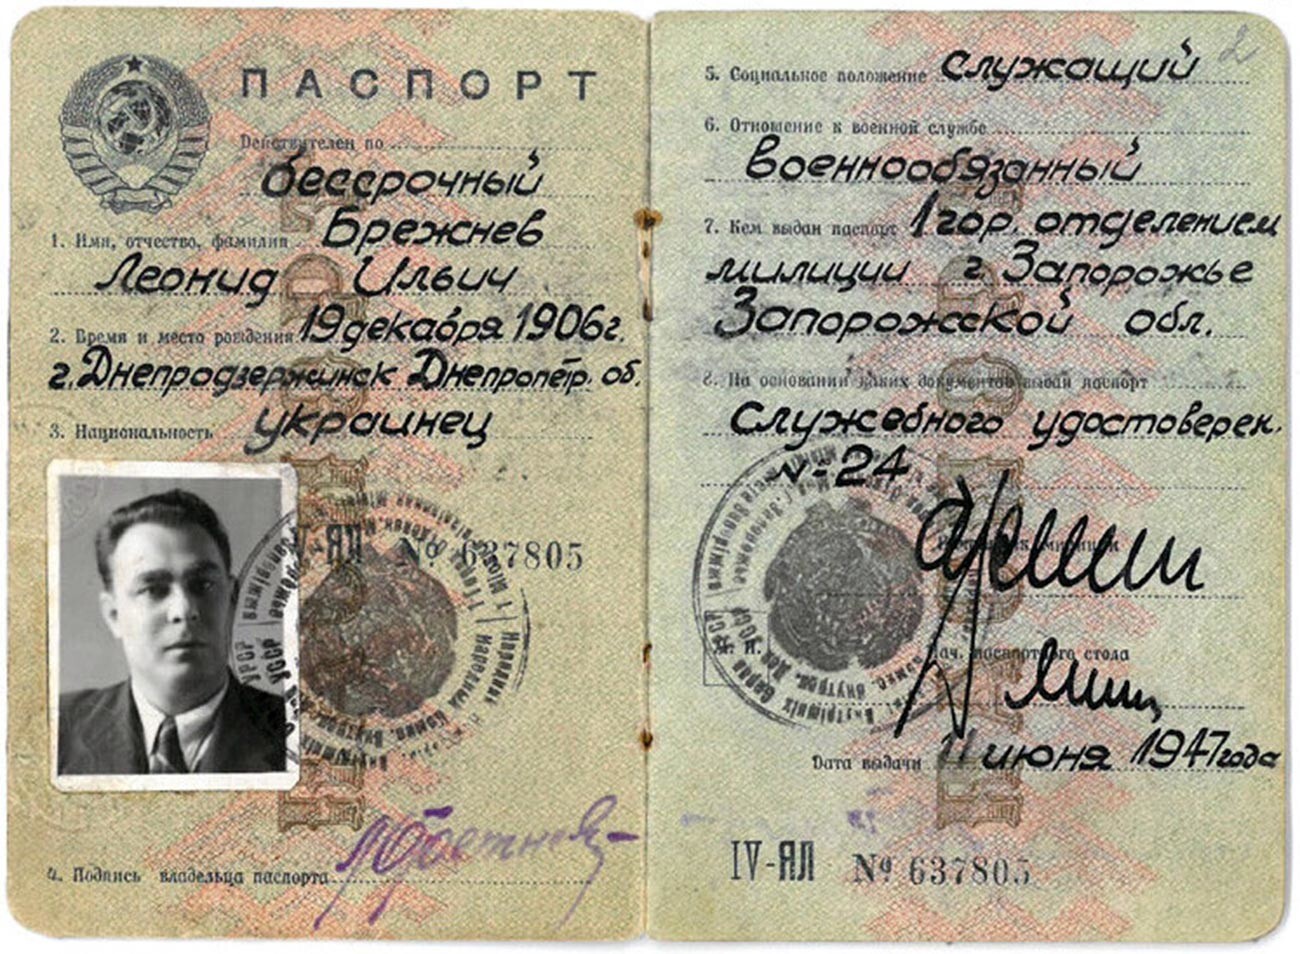 El pasaporte de Leonid Brezhnev, Secretario General del Comité Ejecutivo del Partido Comunista de la URSS